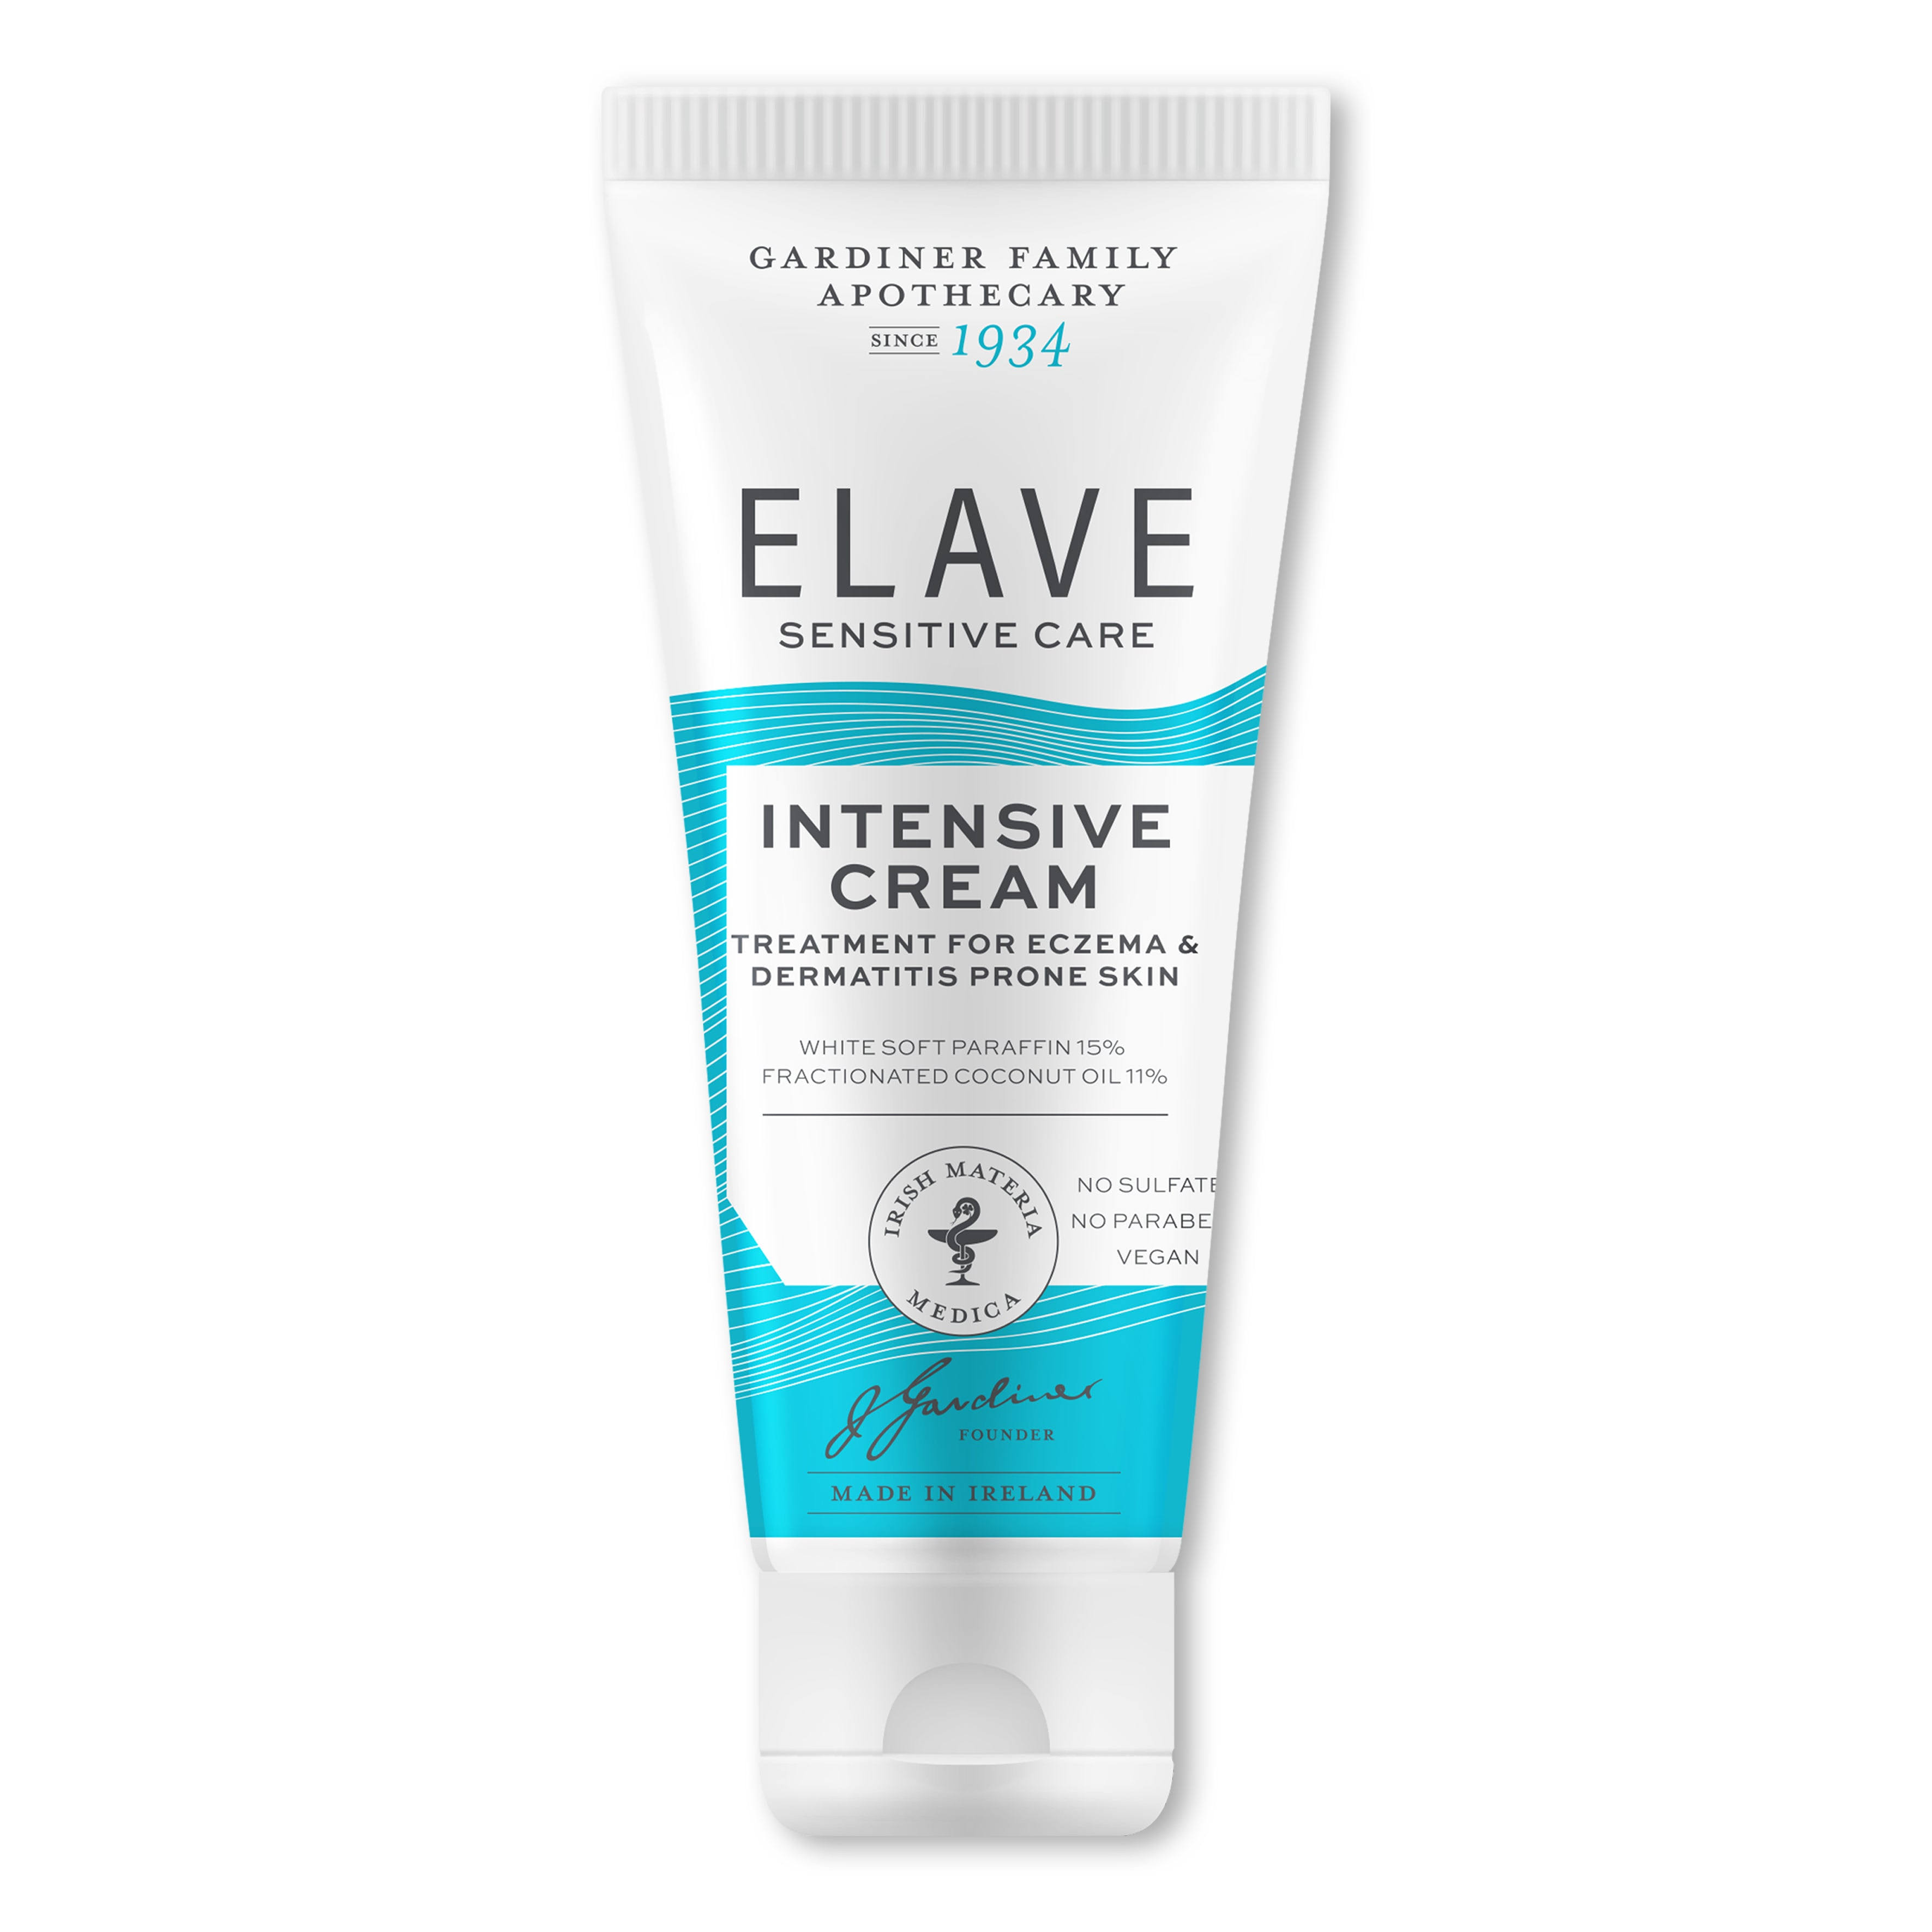 Elave Intensive Cream 50g Tube